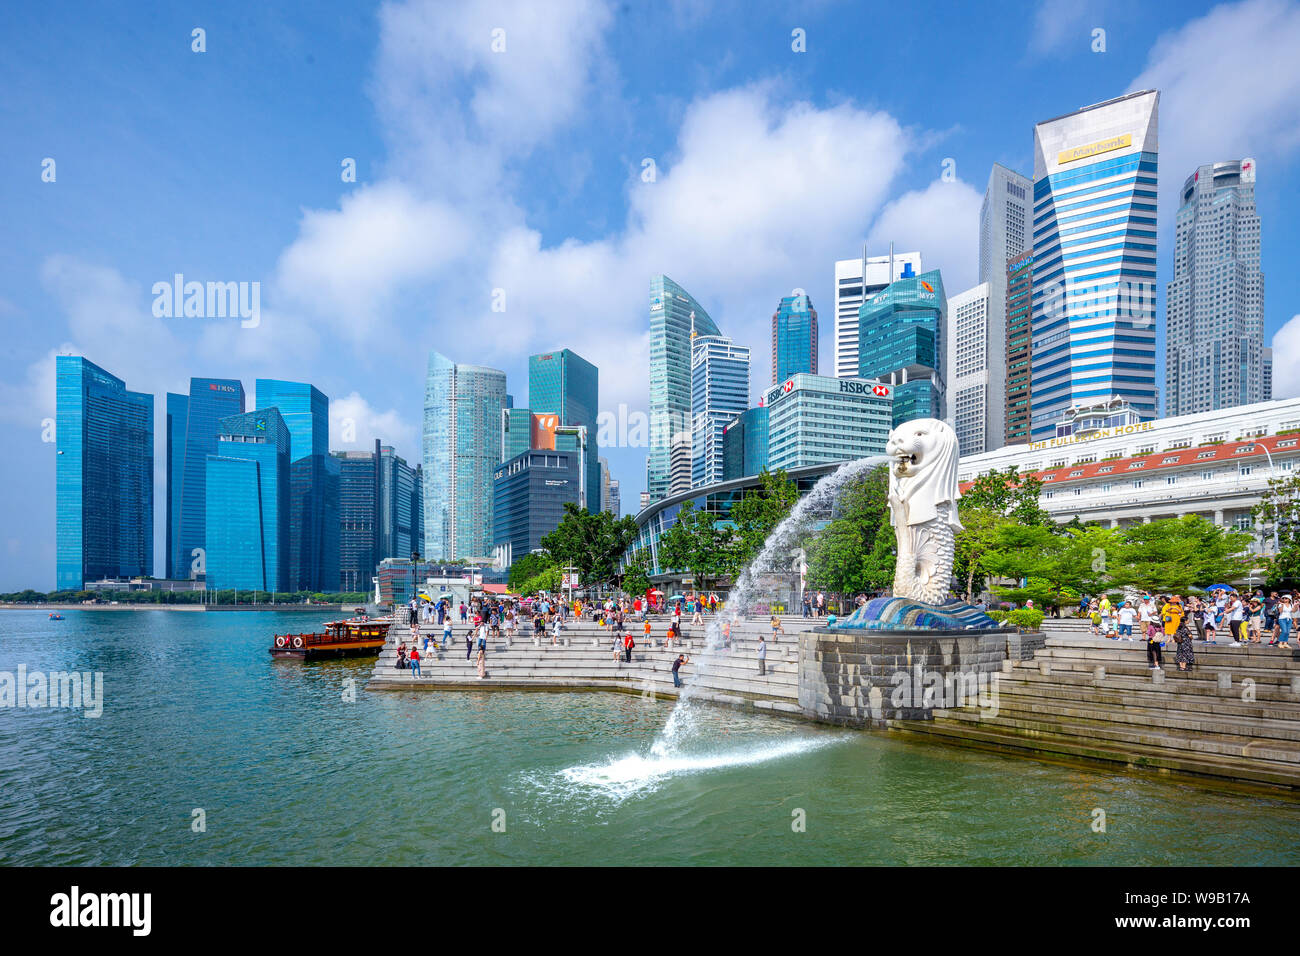 Singapore, Singapore - 10 agosto 2018: statua Merlion fontana nel Parco Merlion. Marina Bay è una baia si trova nella zona centrale di Singapore. Foto Stock